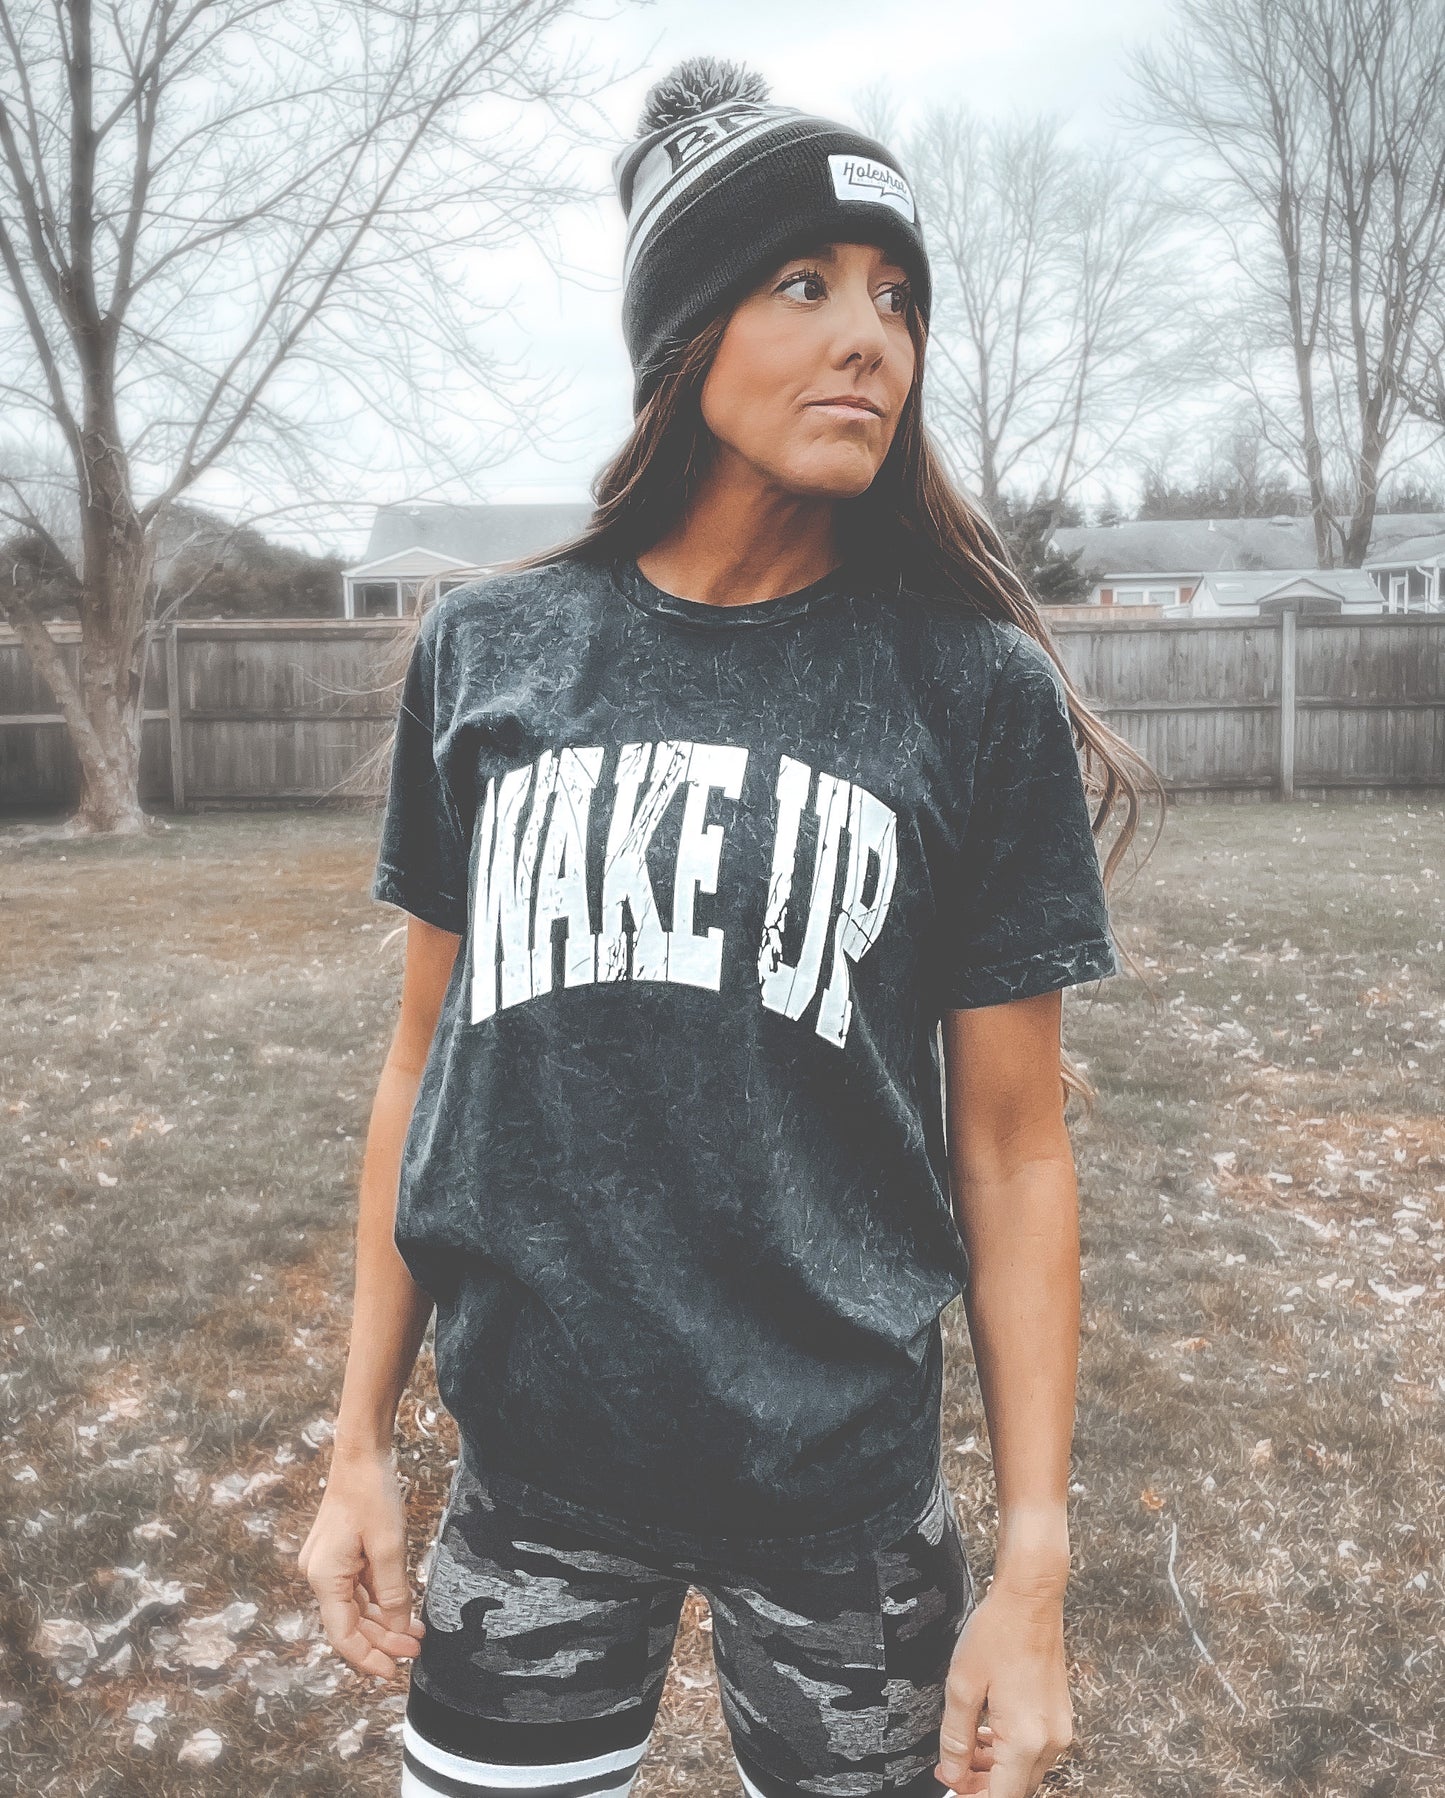 WAKE UP T-Shirt